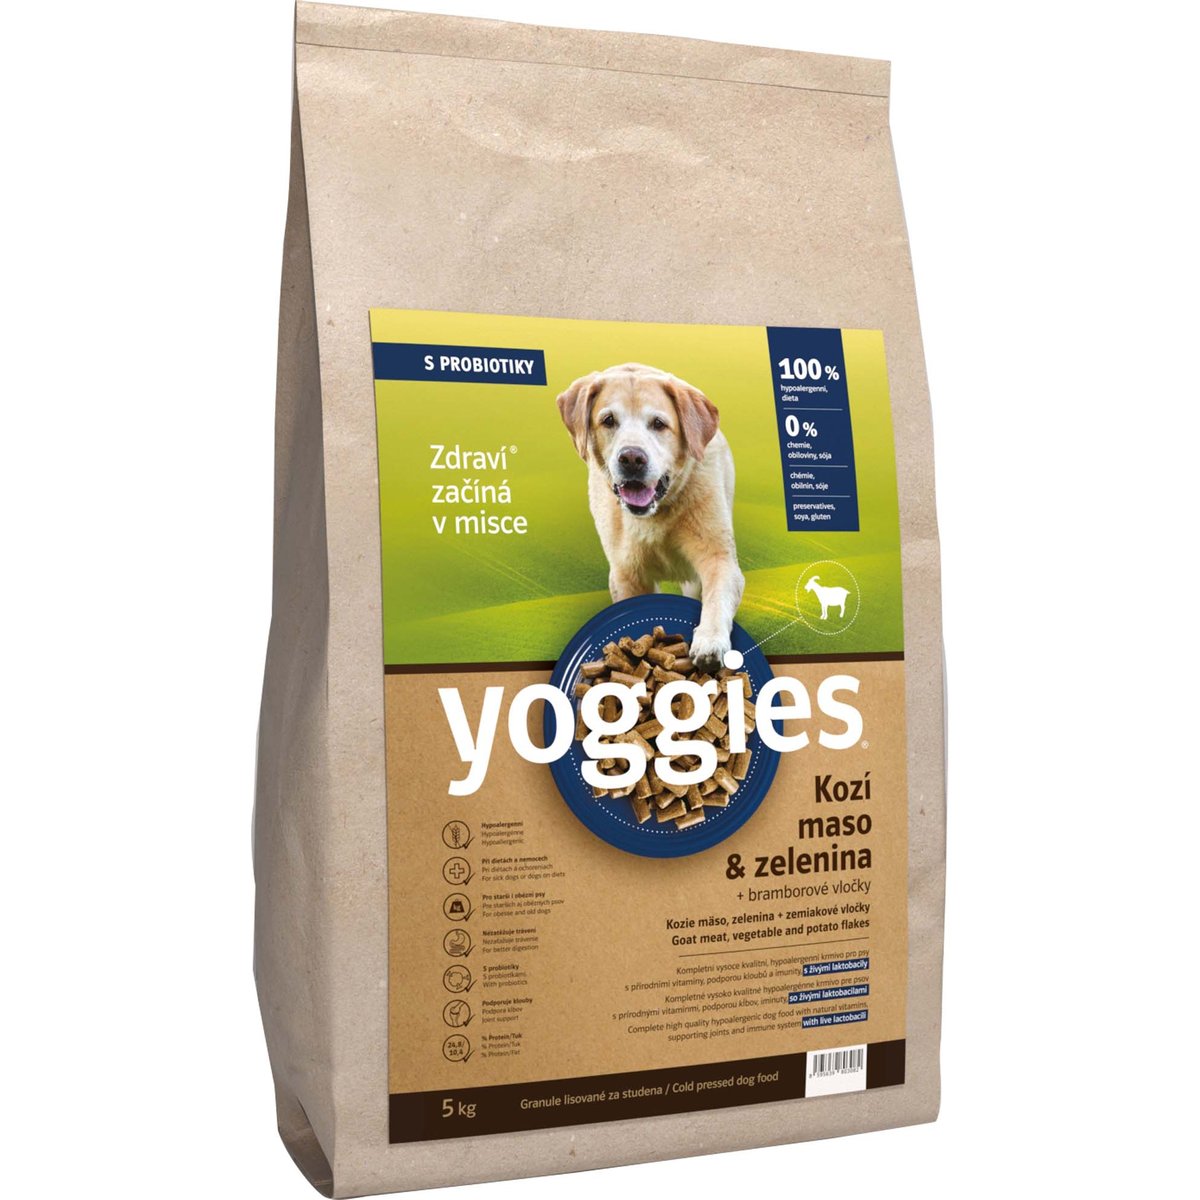 Yoggies Kozí maso a zelenina – hypoalergenní granule lisované za studena s probiotiky pro psy